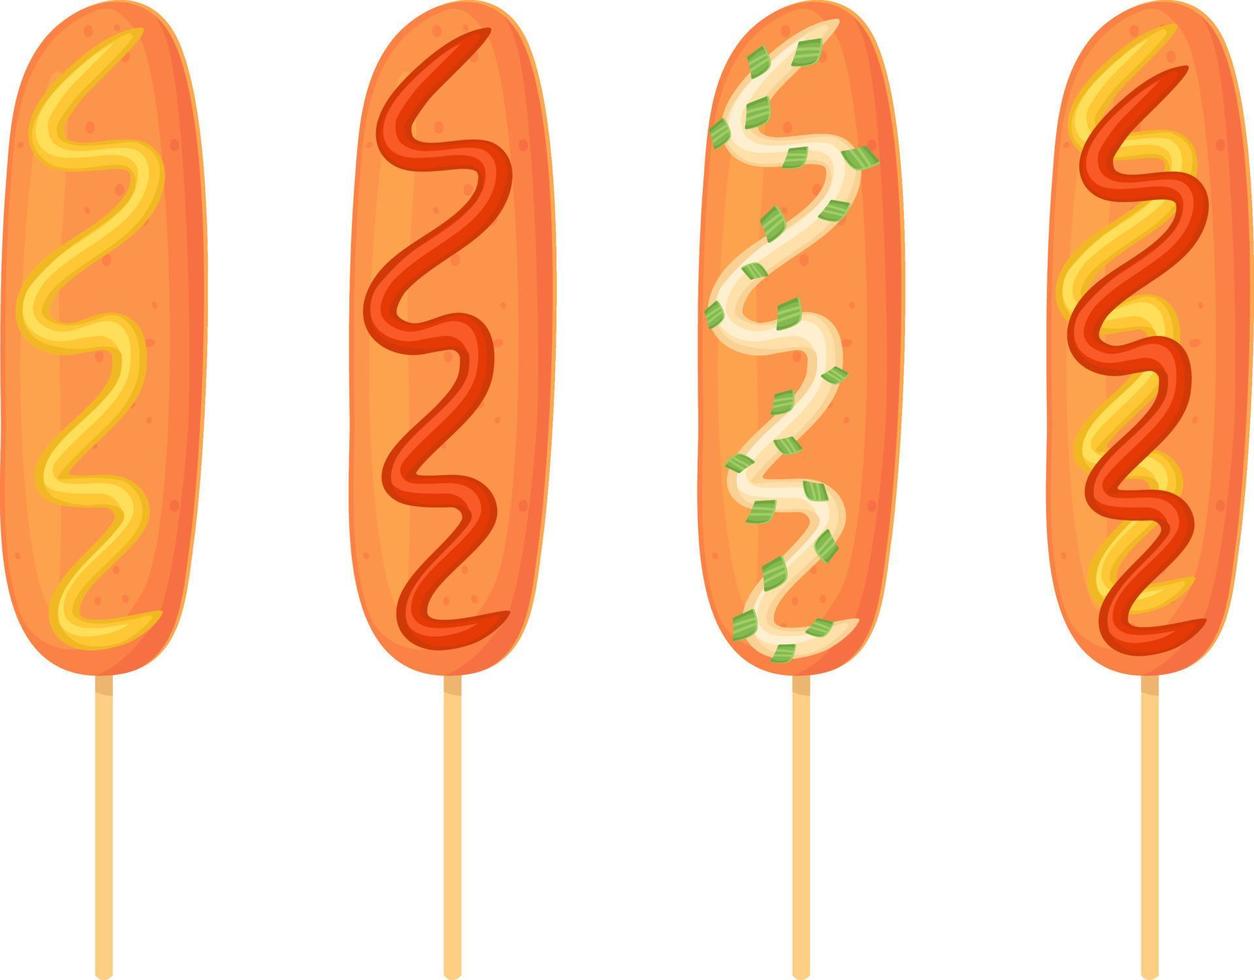 American corn dog set con salsa di ketchup, maionese, senape. cibo di strada, concetto di fast food. illustrazione in stile cartone animato. vettore